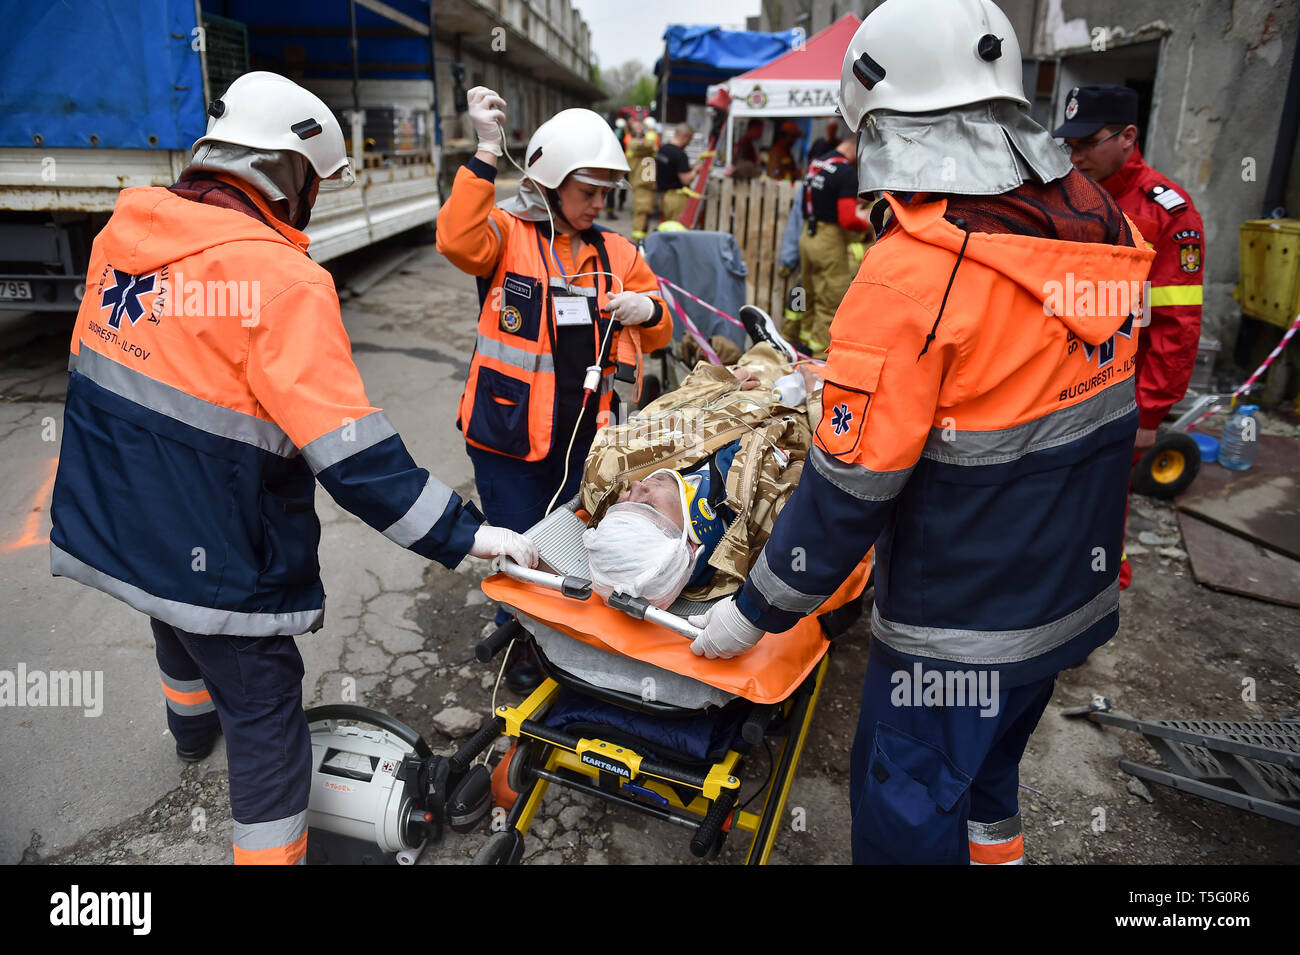 Bucarest, Roumanie - 10 avril 2019 : l'équipe de sauvetage d'urgence en action au cours de l'exercice médical les plus complexes dans l'histoire de l'OTAN, guerrier vigoureux Banque D'Images